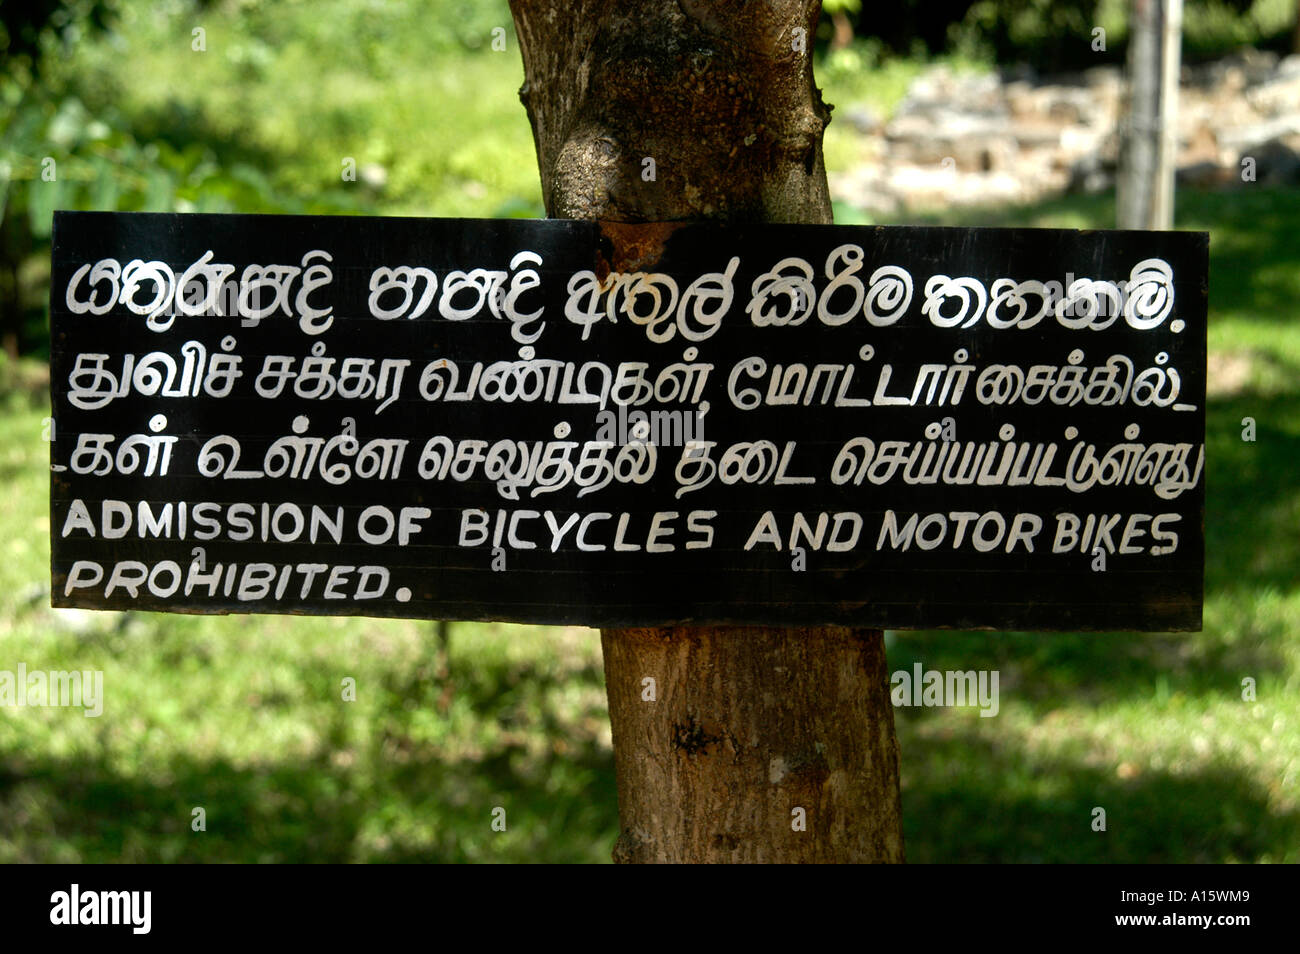 Sri Lanka pas de bicyclettes et de motos location vélo Banque D'Images